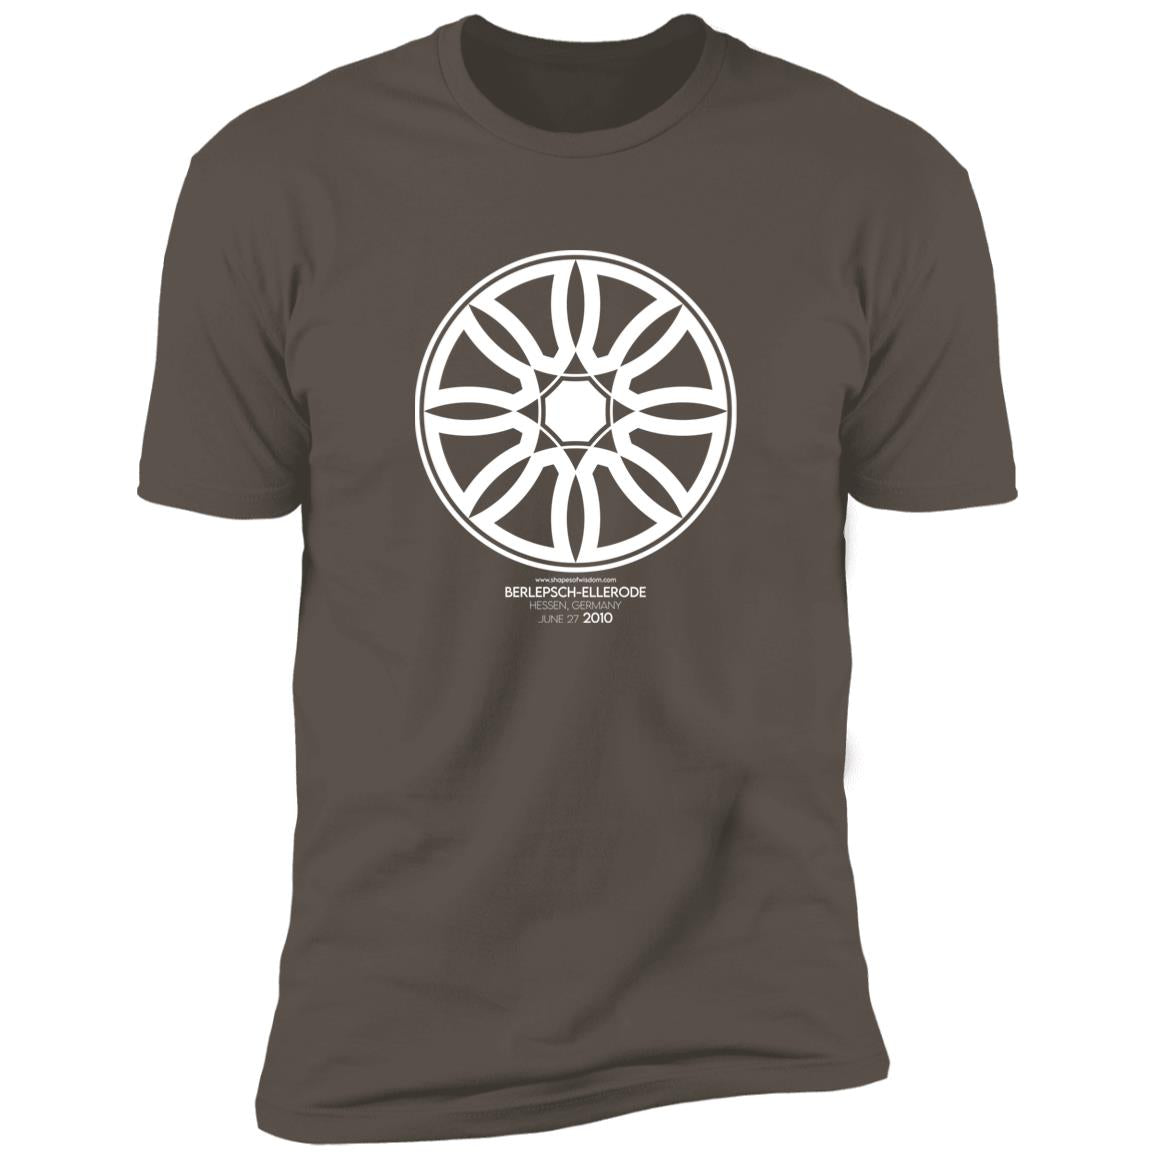 Crop Circle Premium T-Shirt - Berlepsch-Ellerode